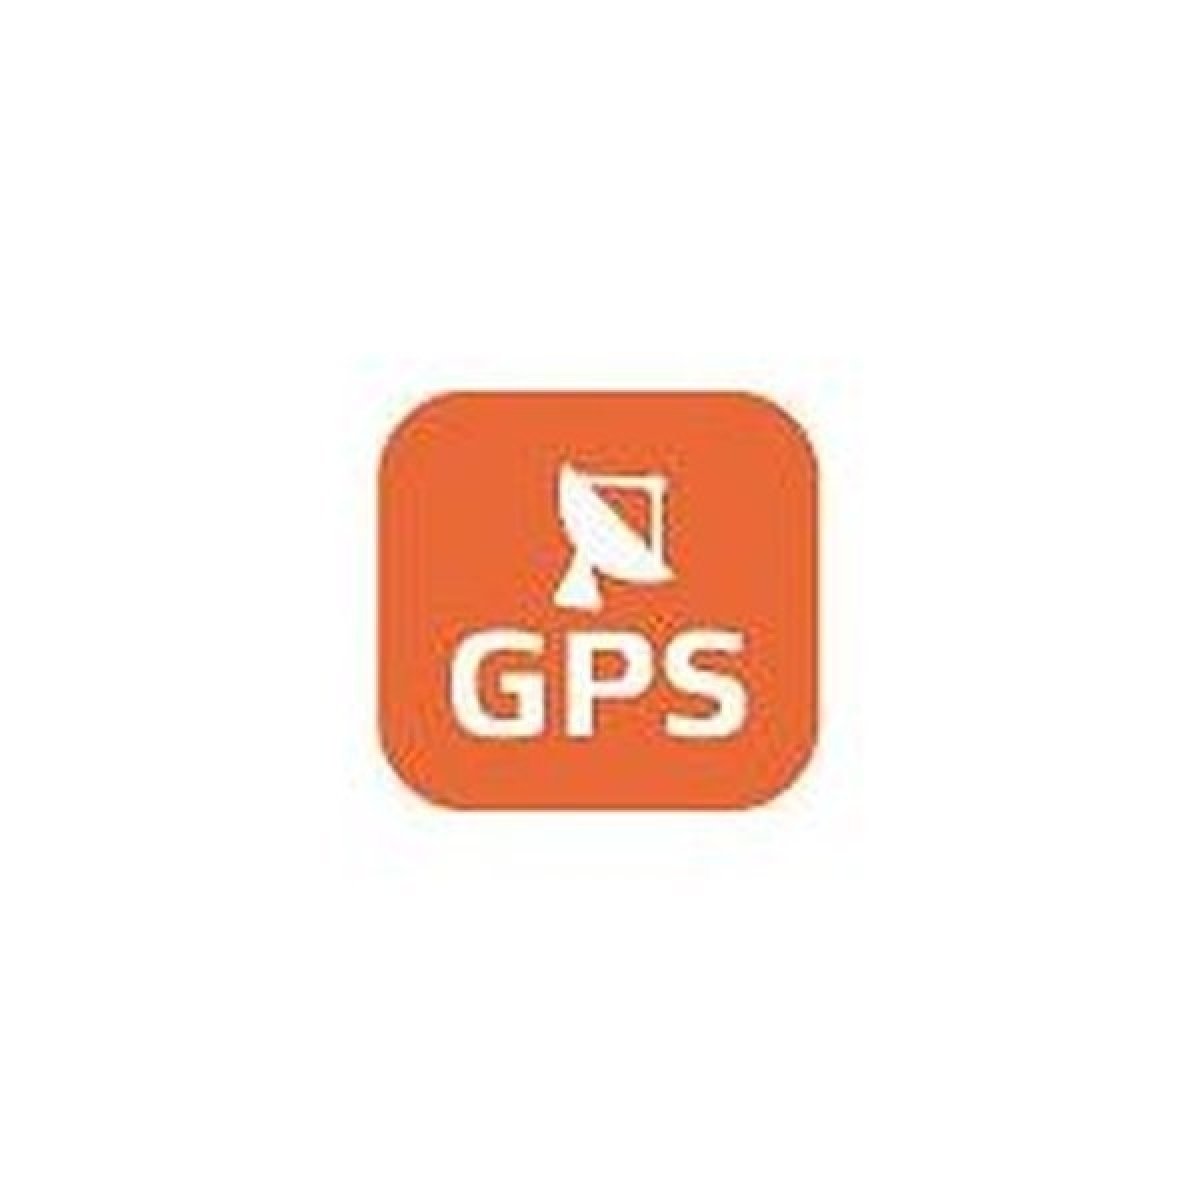 Nahrávání polohy a rychlosti s integrovanou GPS